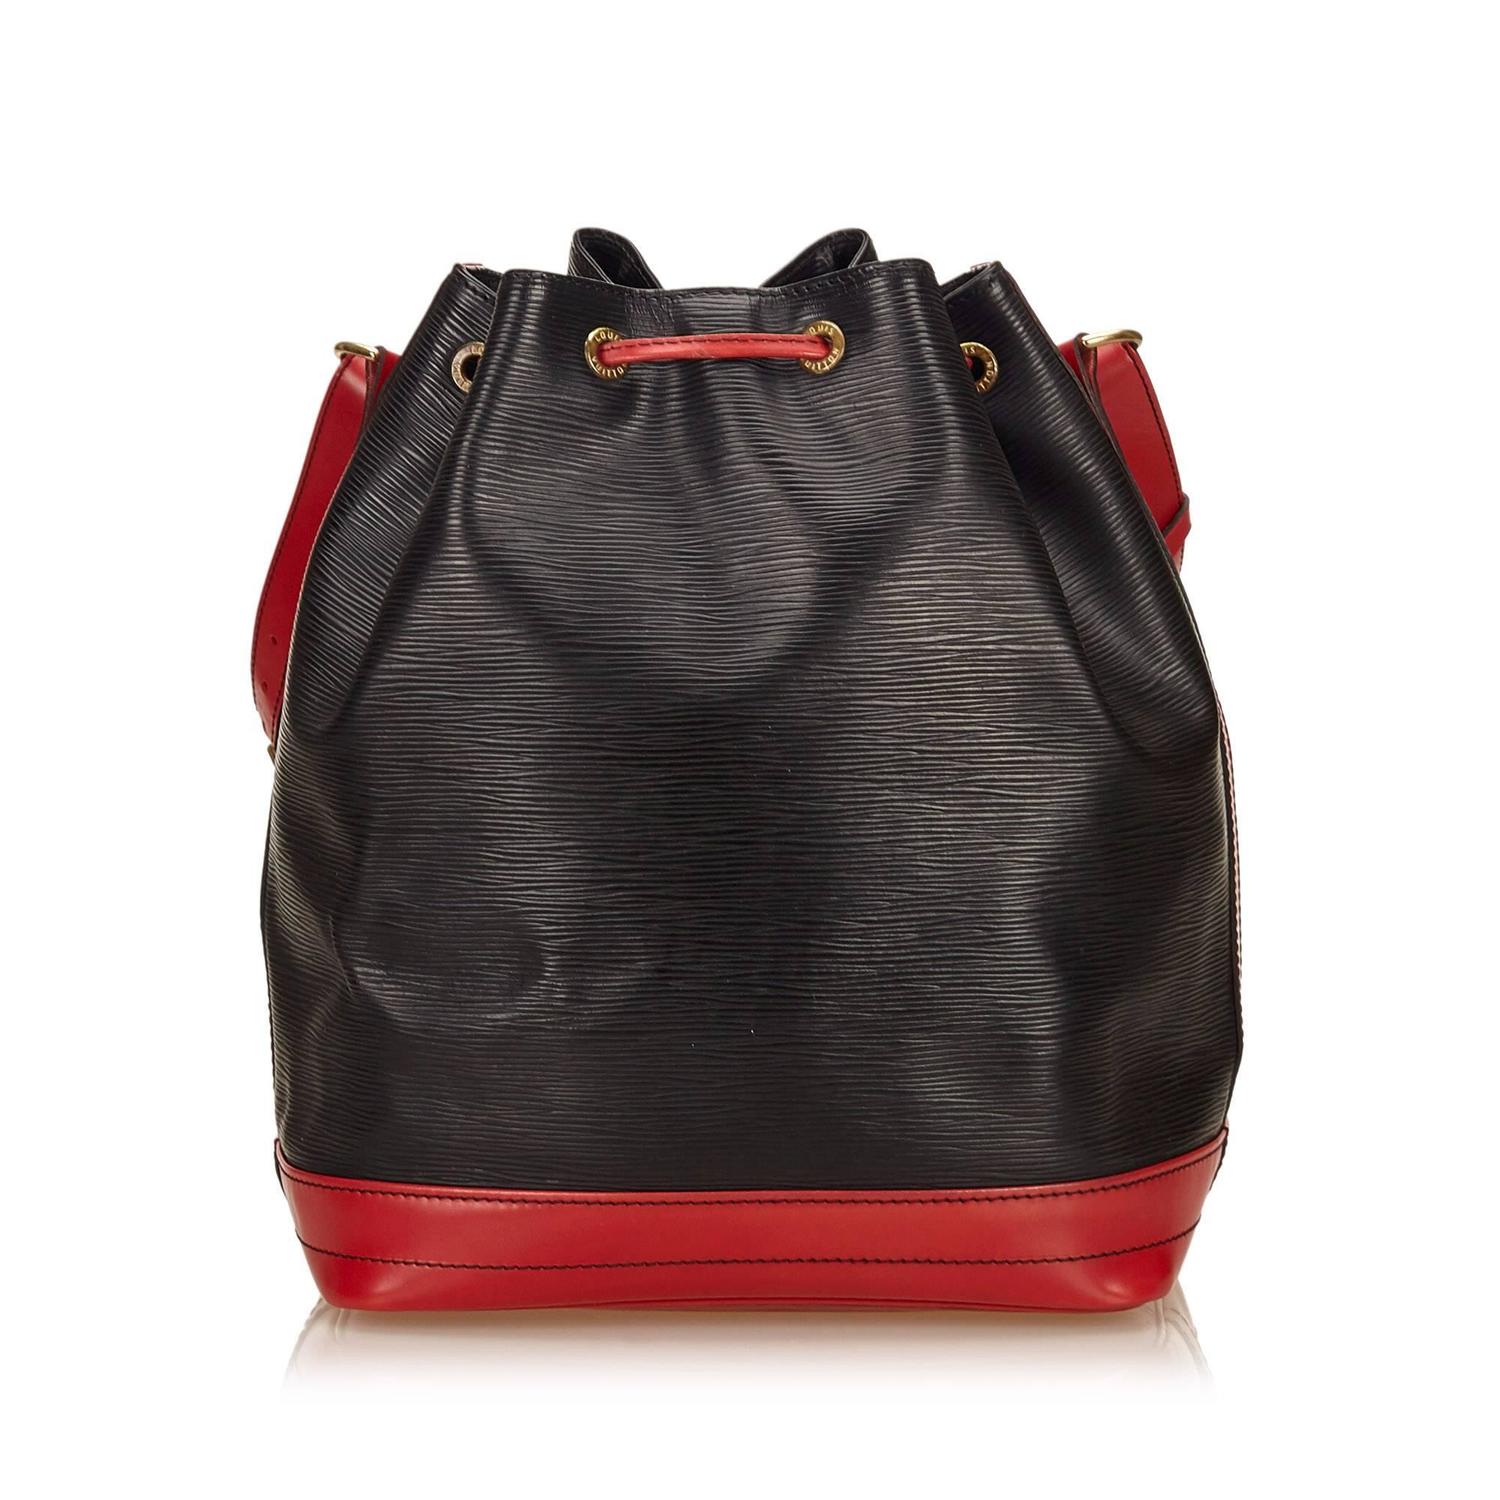 Louis Vuitton Black and Red Epi Bicolor Noe Shoulder Bag For Sale at 1stdibs